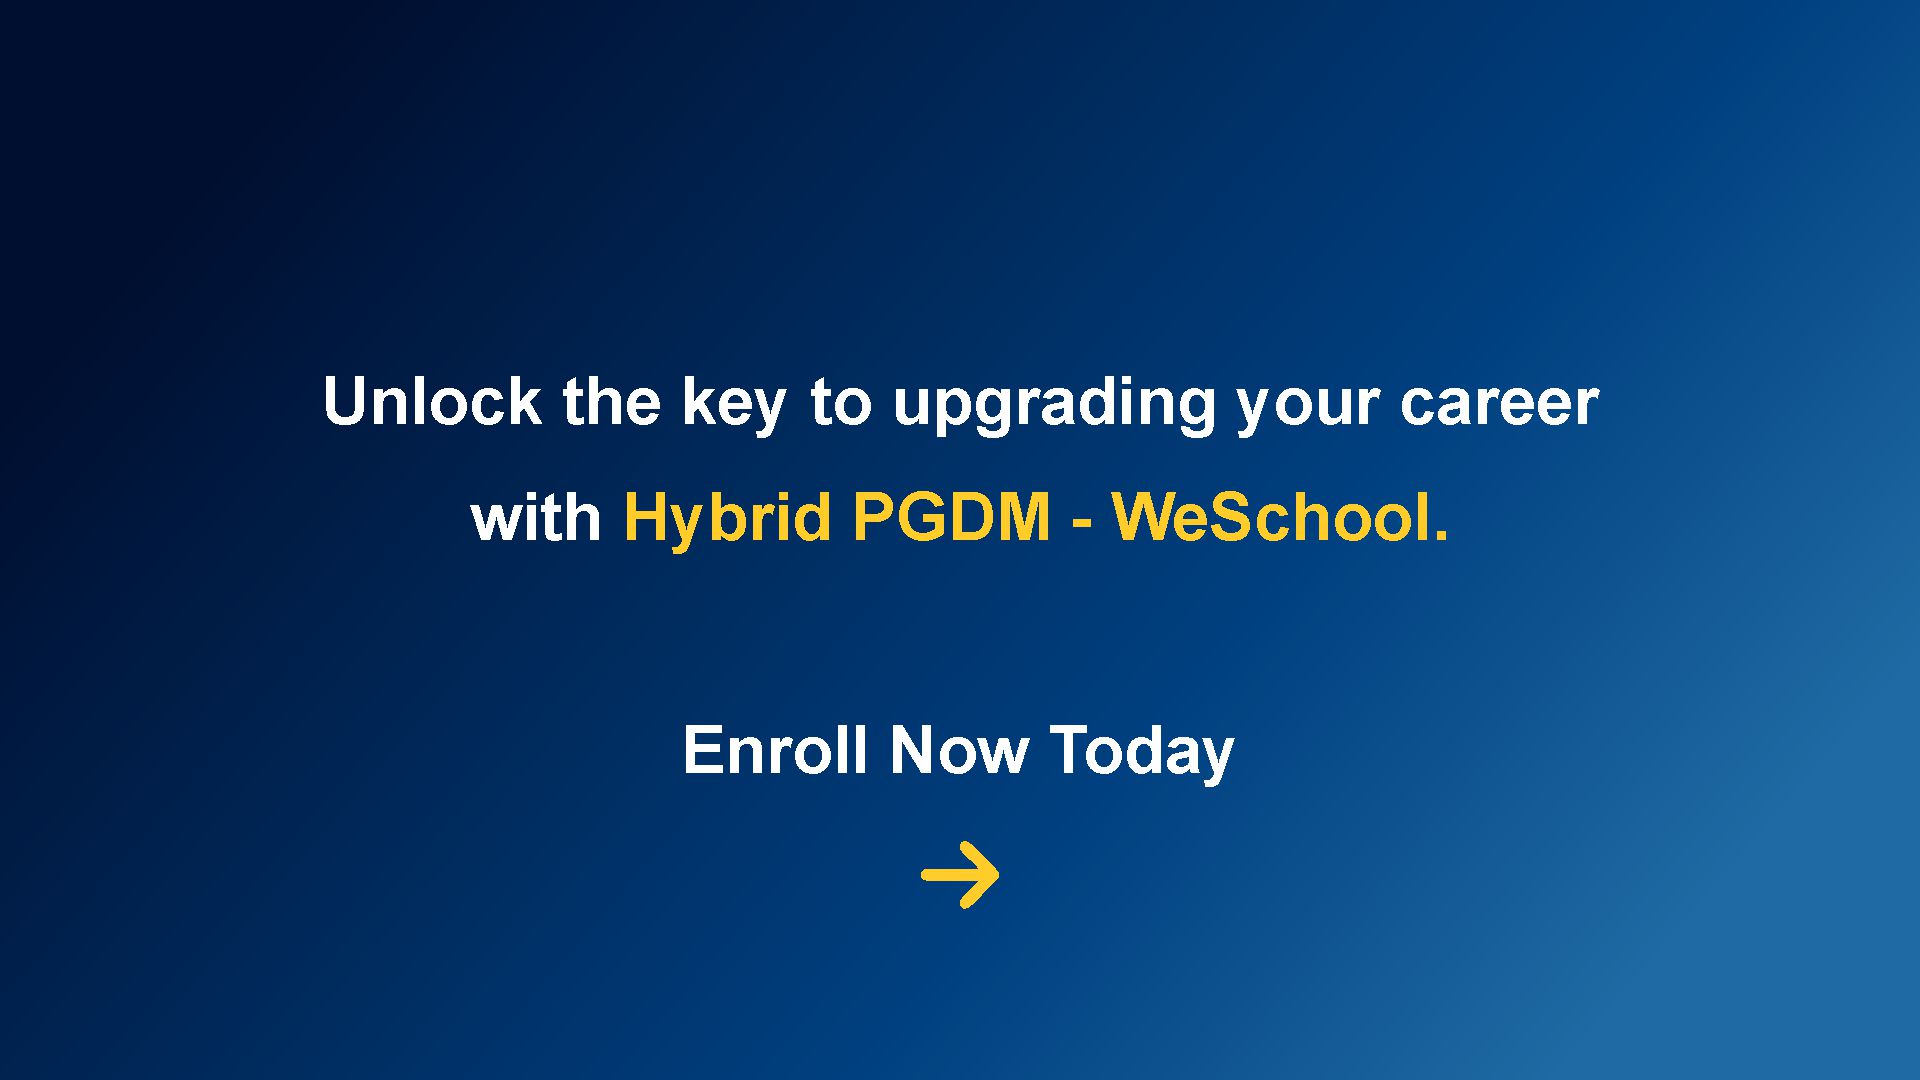 Hybrid-PGDM program